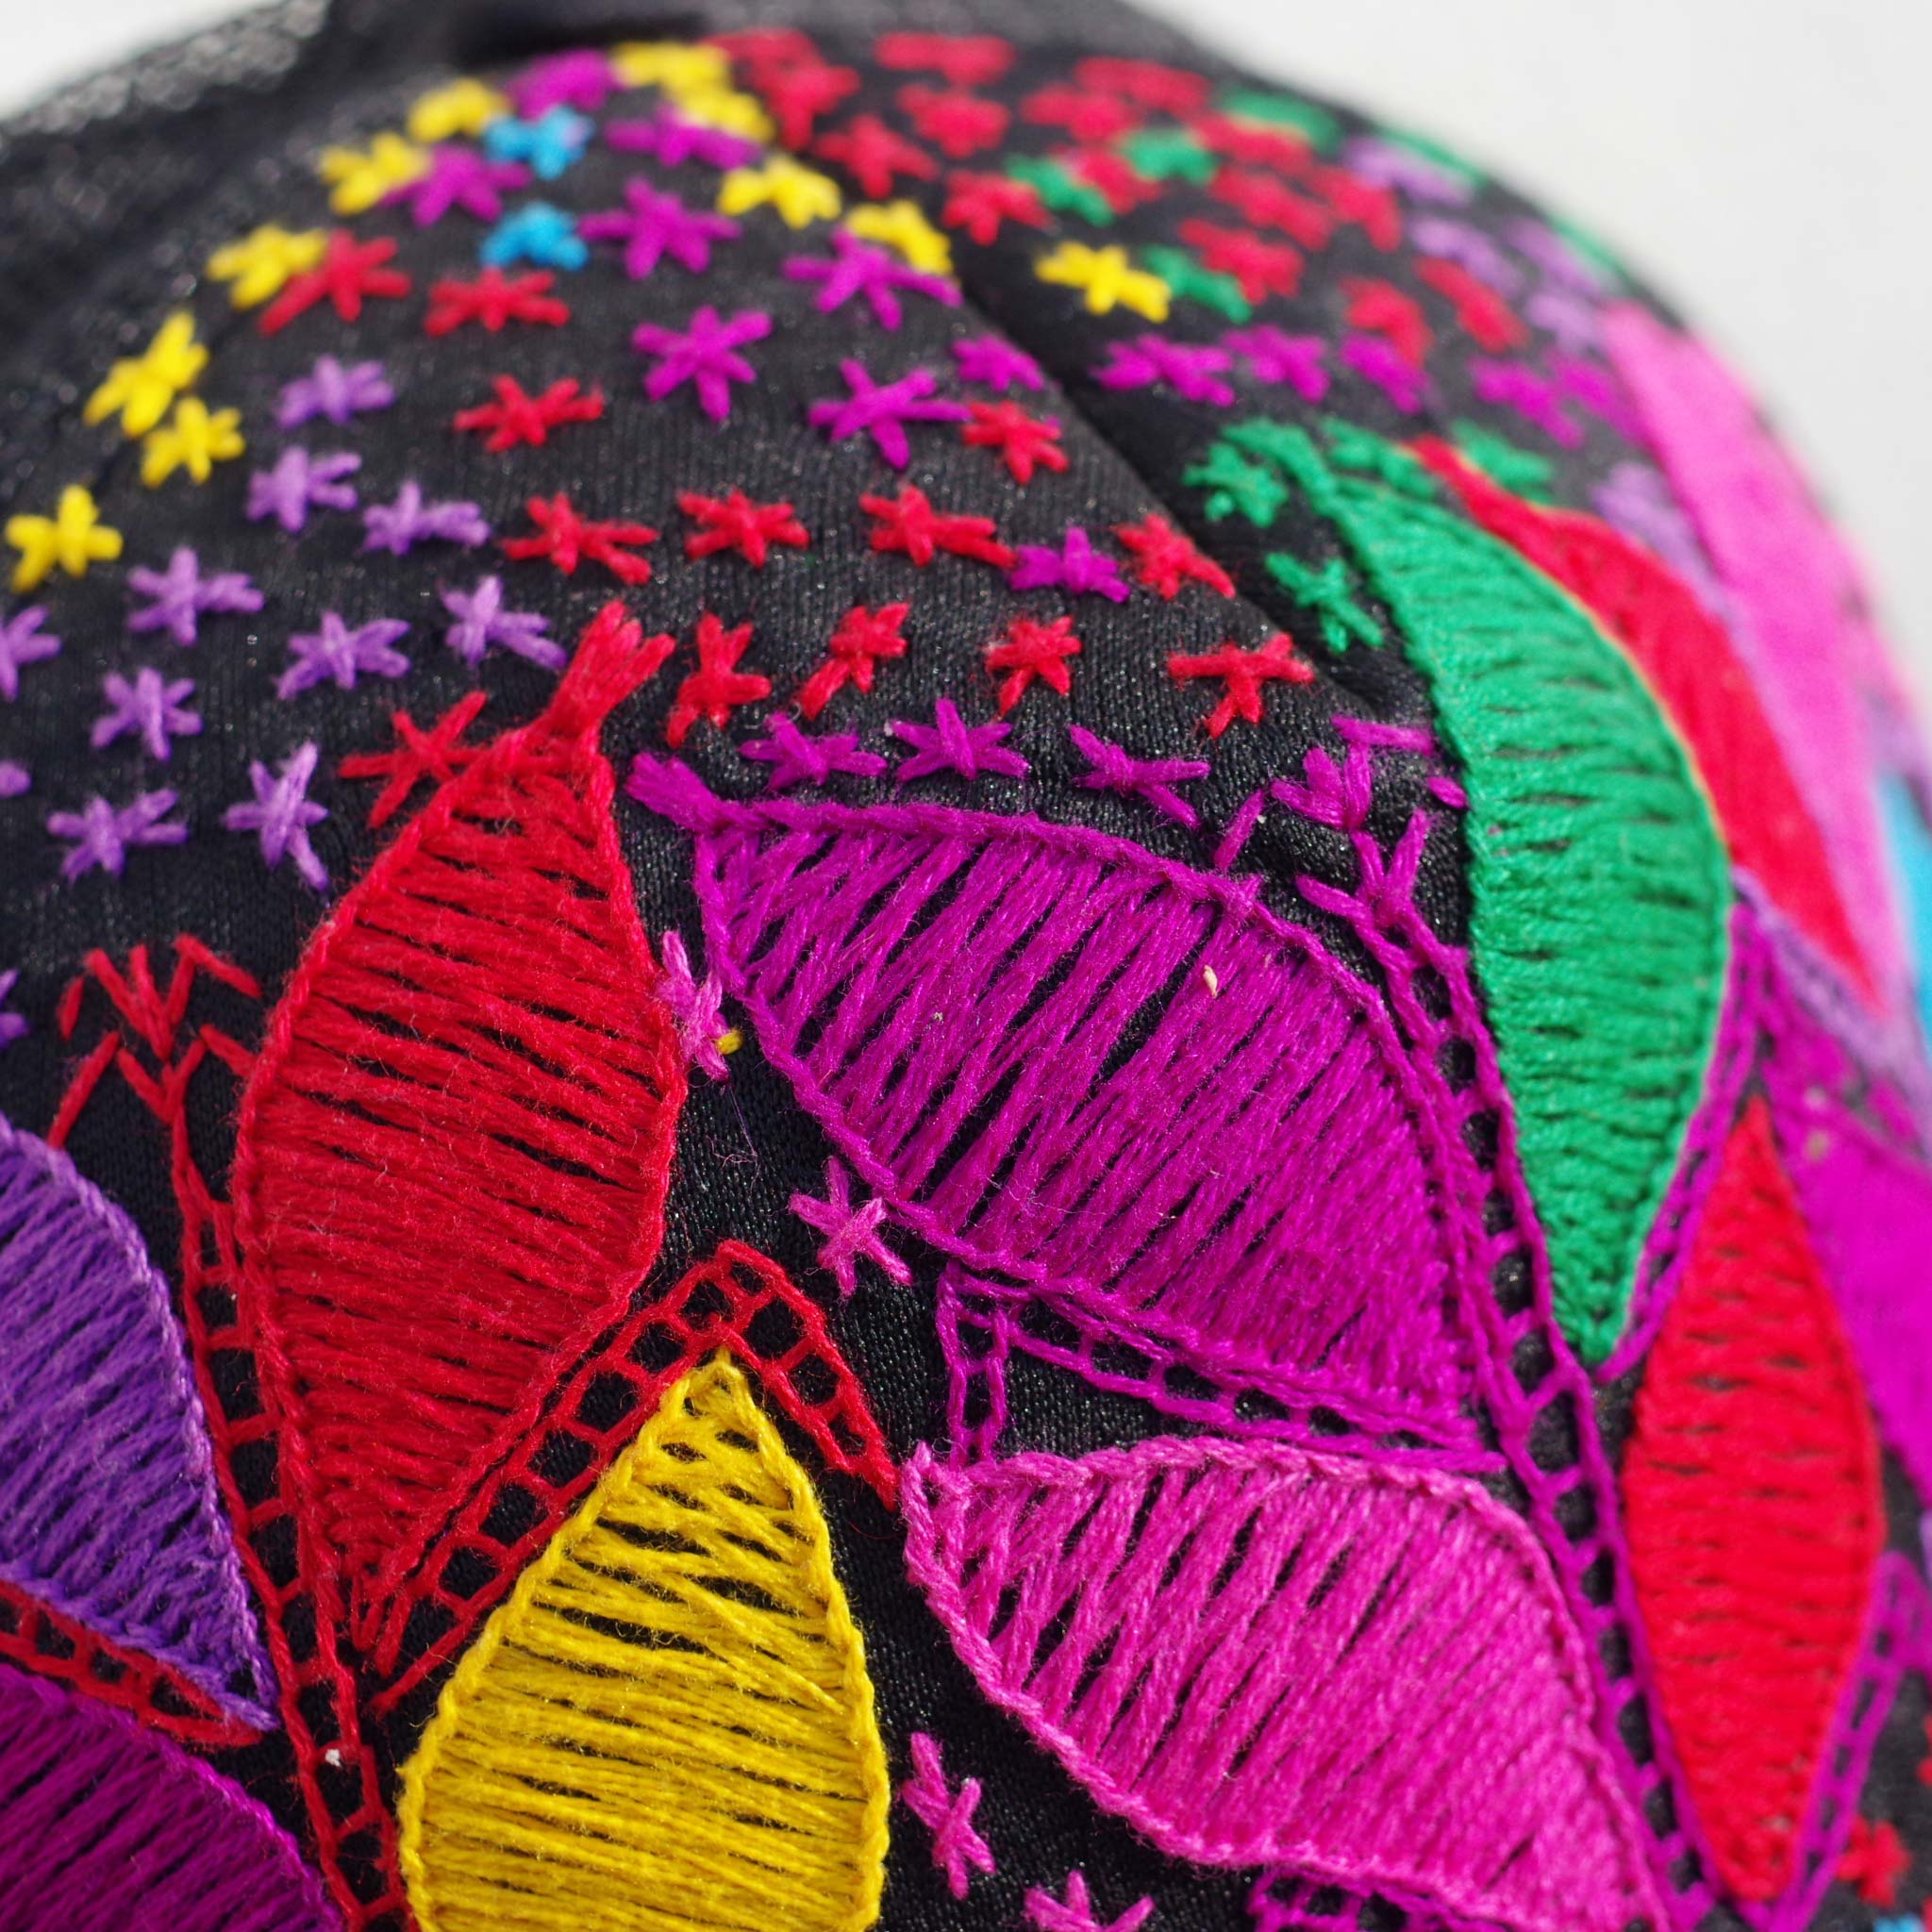 “刺繍CAP,刺繍,ボタニカル,カジュアル,embroidery,かっこいい,チカーノ,CAP,キャップ,野球帽,帽子,個性的,エスニック,かわいい,おしゃれ,中南米,メキシコ,メキシコ雑貨,雑貨,メキシコ雑貨PAD”